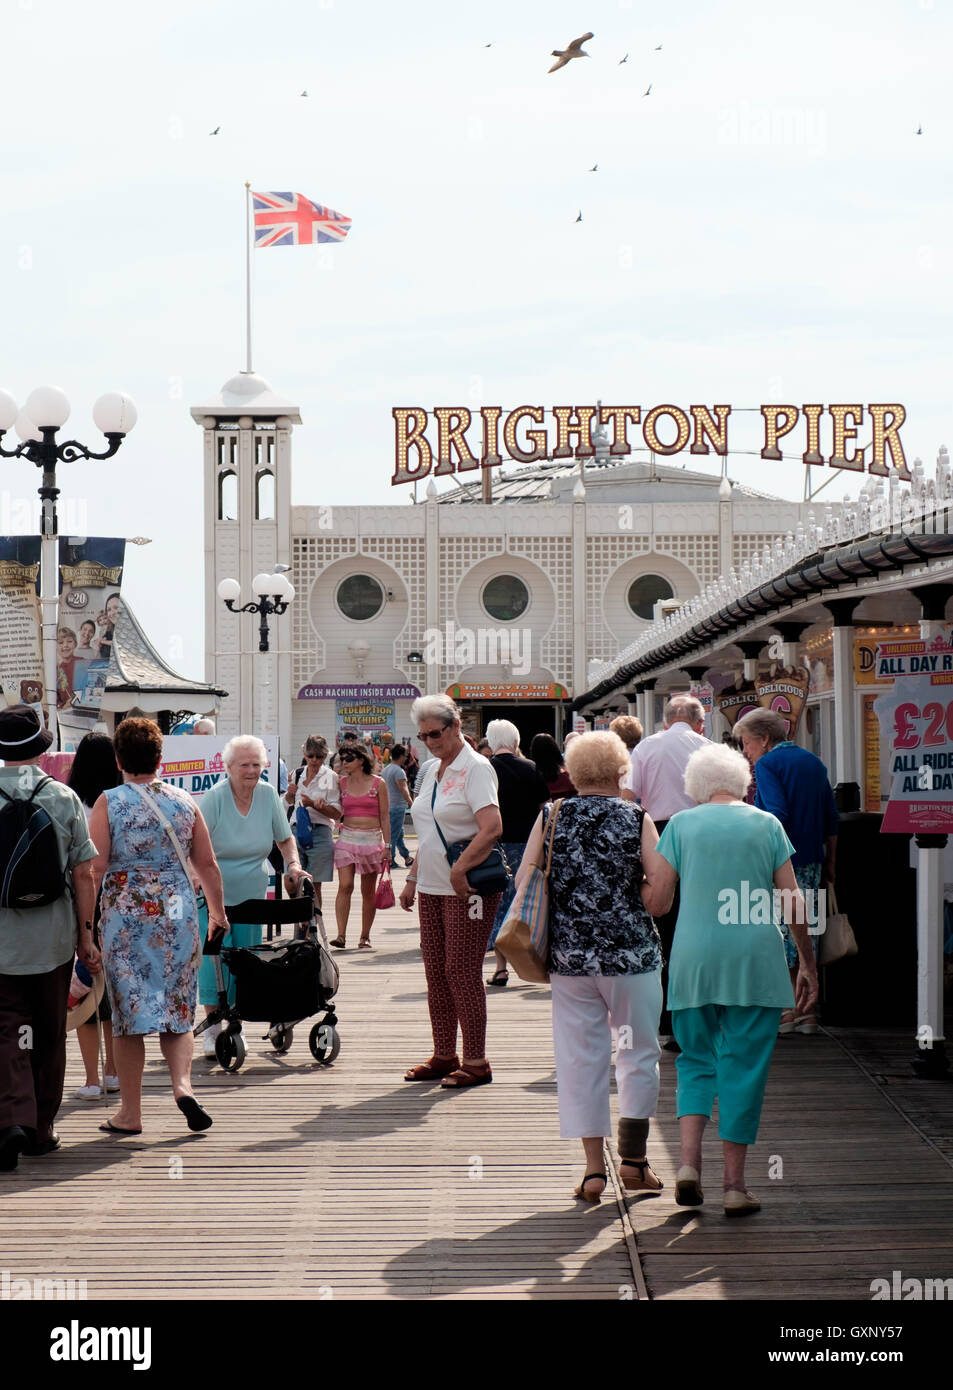 Pier von Brighton, UK - 13. September 2016: Senioren am Pier von Brighton Stockfoto